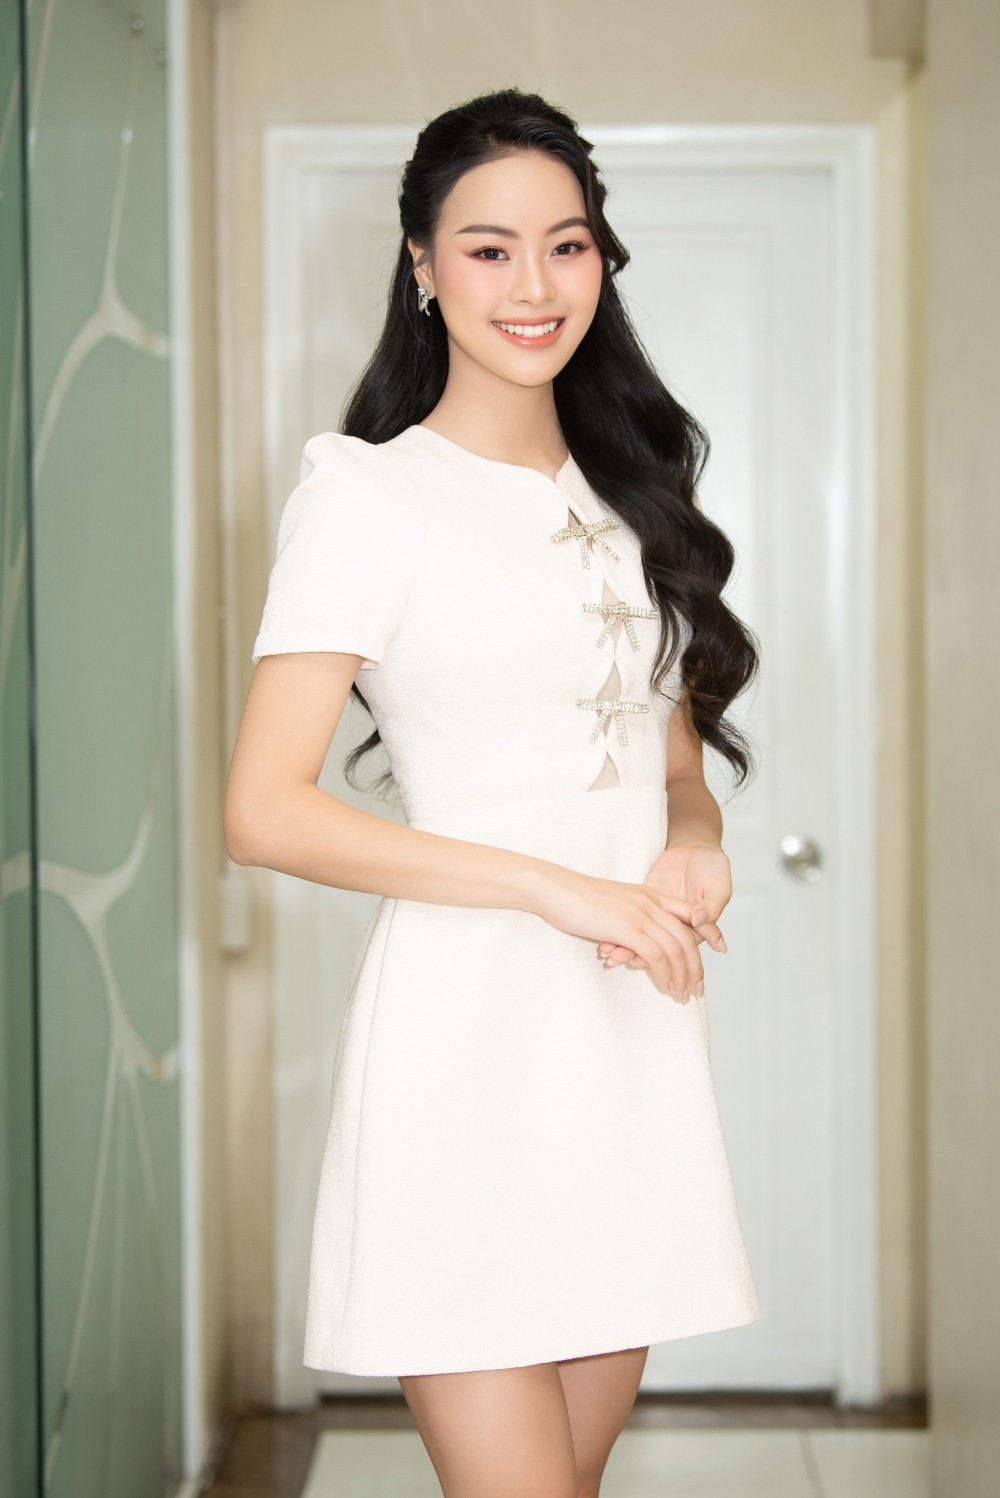 Thí sinh Đào Thị Hiền - em gái của người đẹp Đào Thị Hà (Top 5 Miss Universe Vietnam 2019) xuất hiện với ngoại hình xinh xắn, chiều cao ấn tượng.